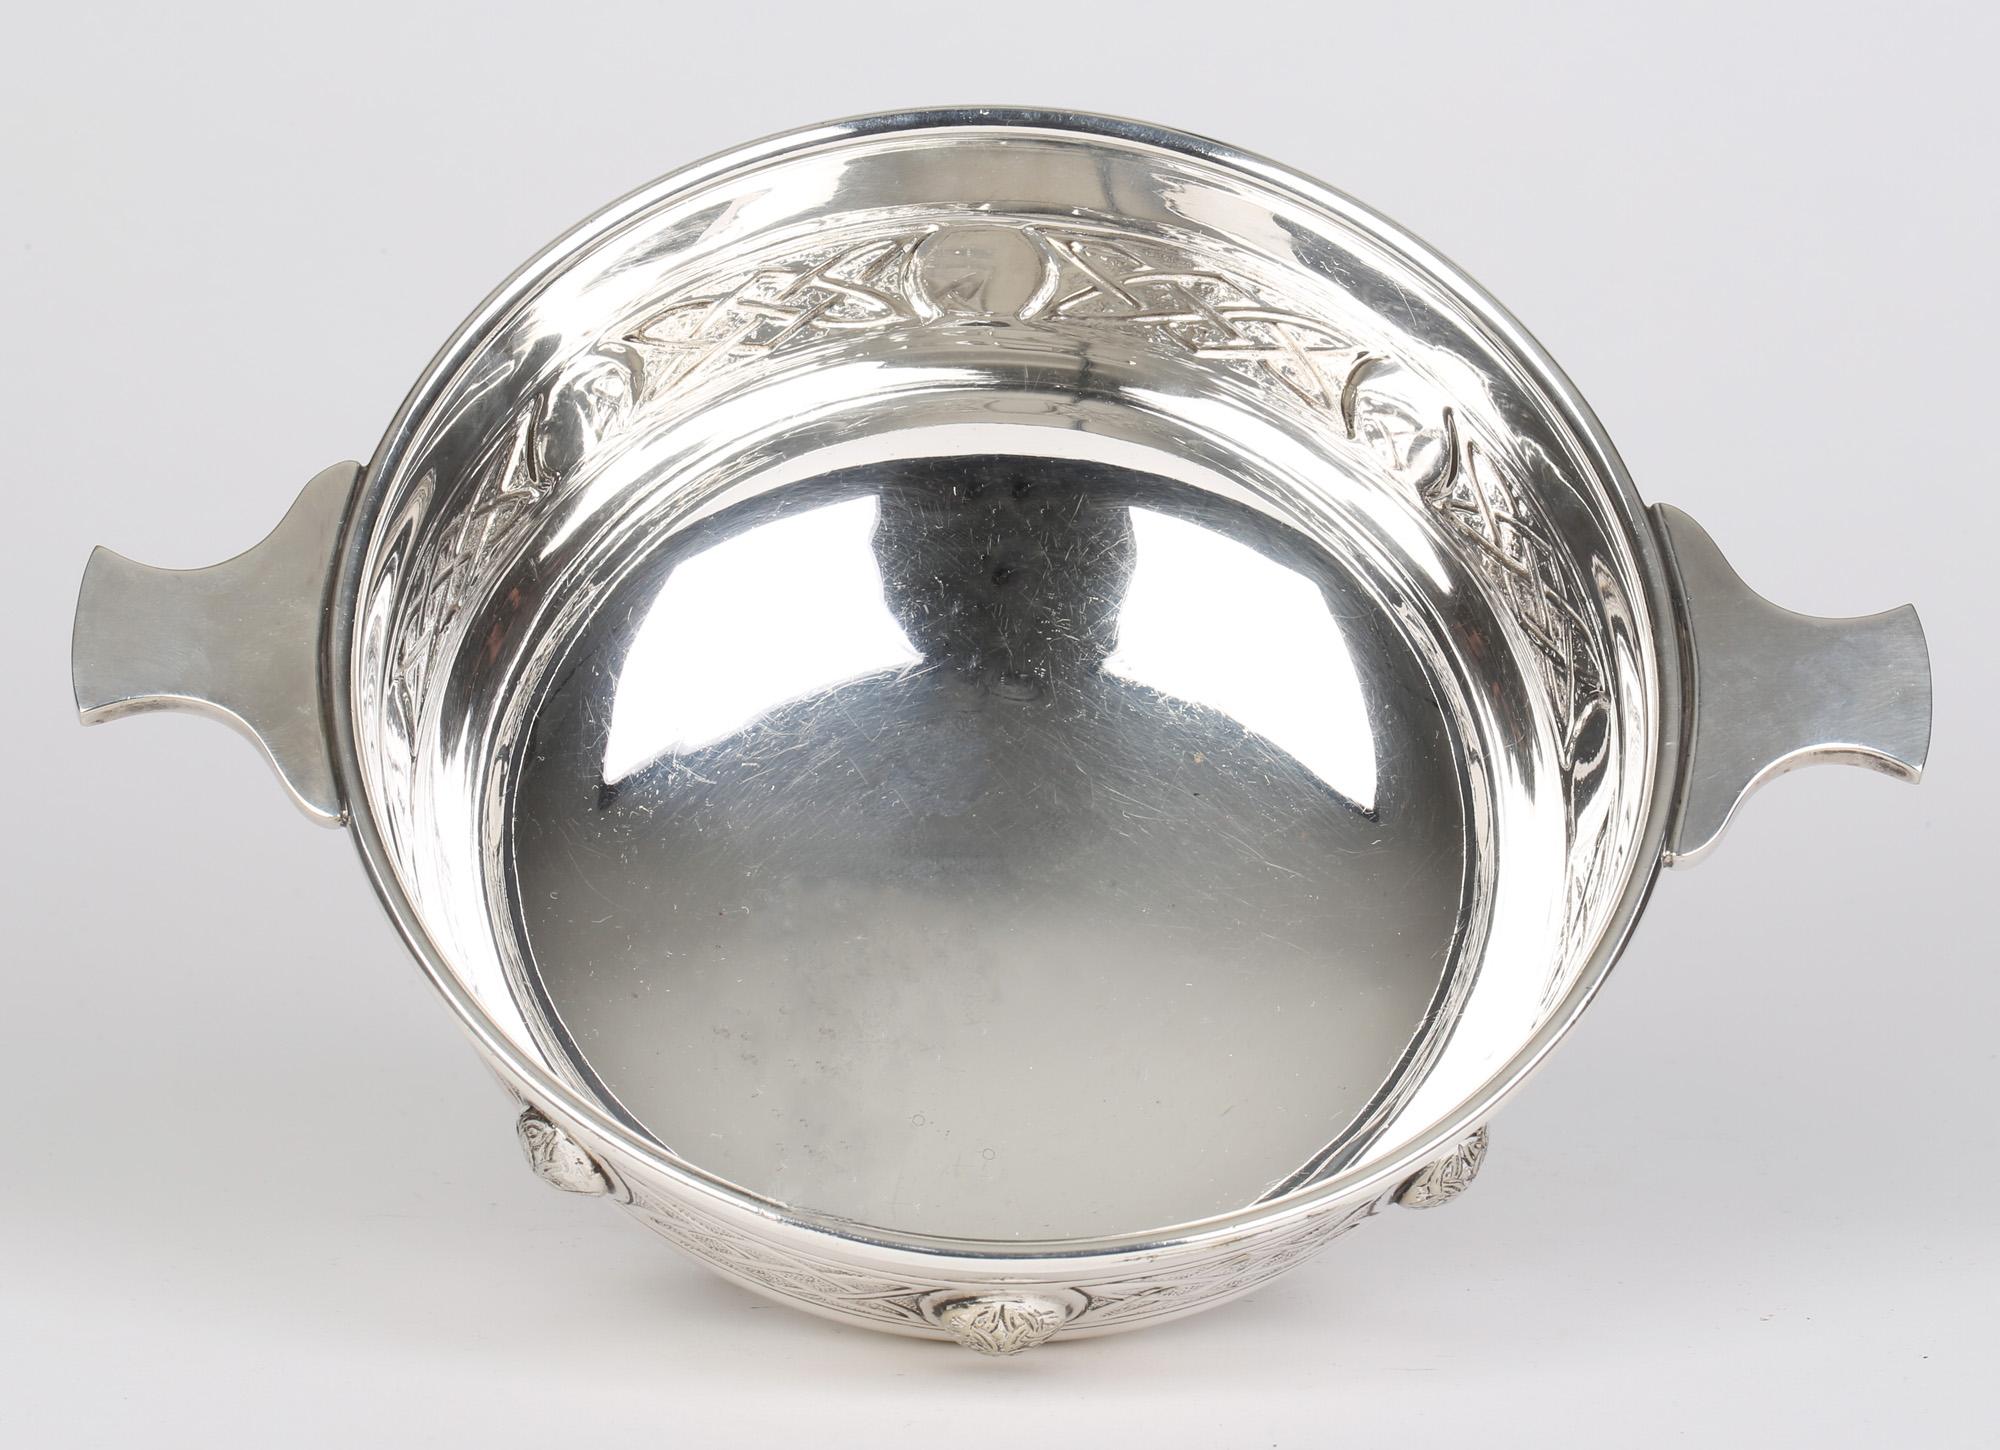 Exceptionnelle qualité d'un grand bol Quaiche à deux anses de style néo-celtique Arts & Crafts Sheffield en métal argenté par Martin Hall & Co et datant d'environ 1900. Cette impressionnante coupe, de fabrication très soignée, repose sur quatre